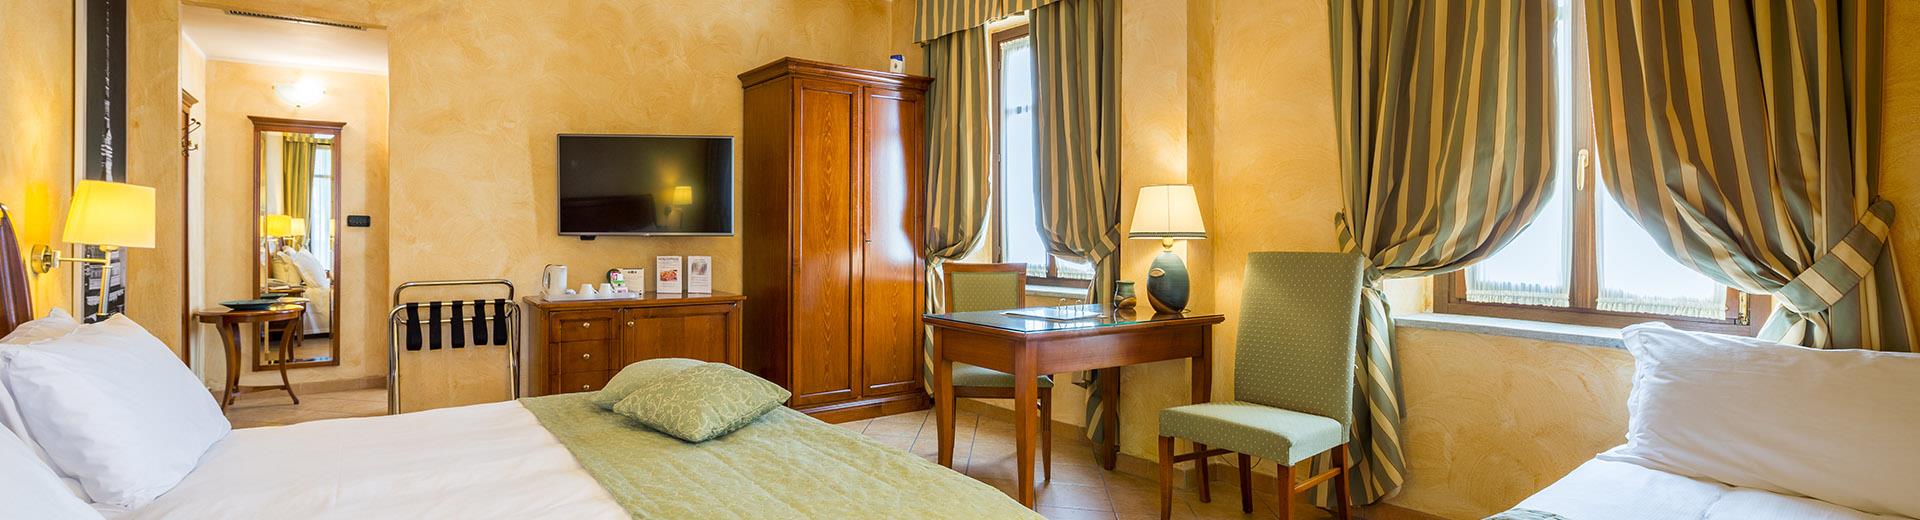 Sobrio y elegante, las habitaciones del Best Western Plus Hotel Le Rondini Turín reflejan el estilo de la antigua granja y hacen de su estancia una experiencia inolvidable.